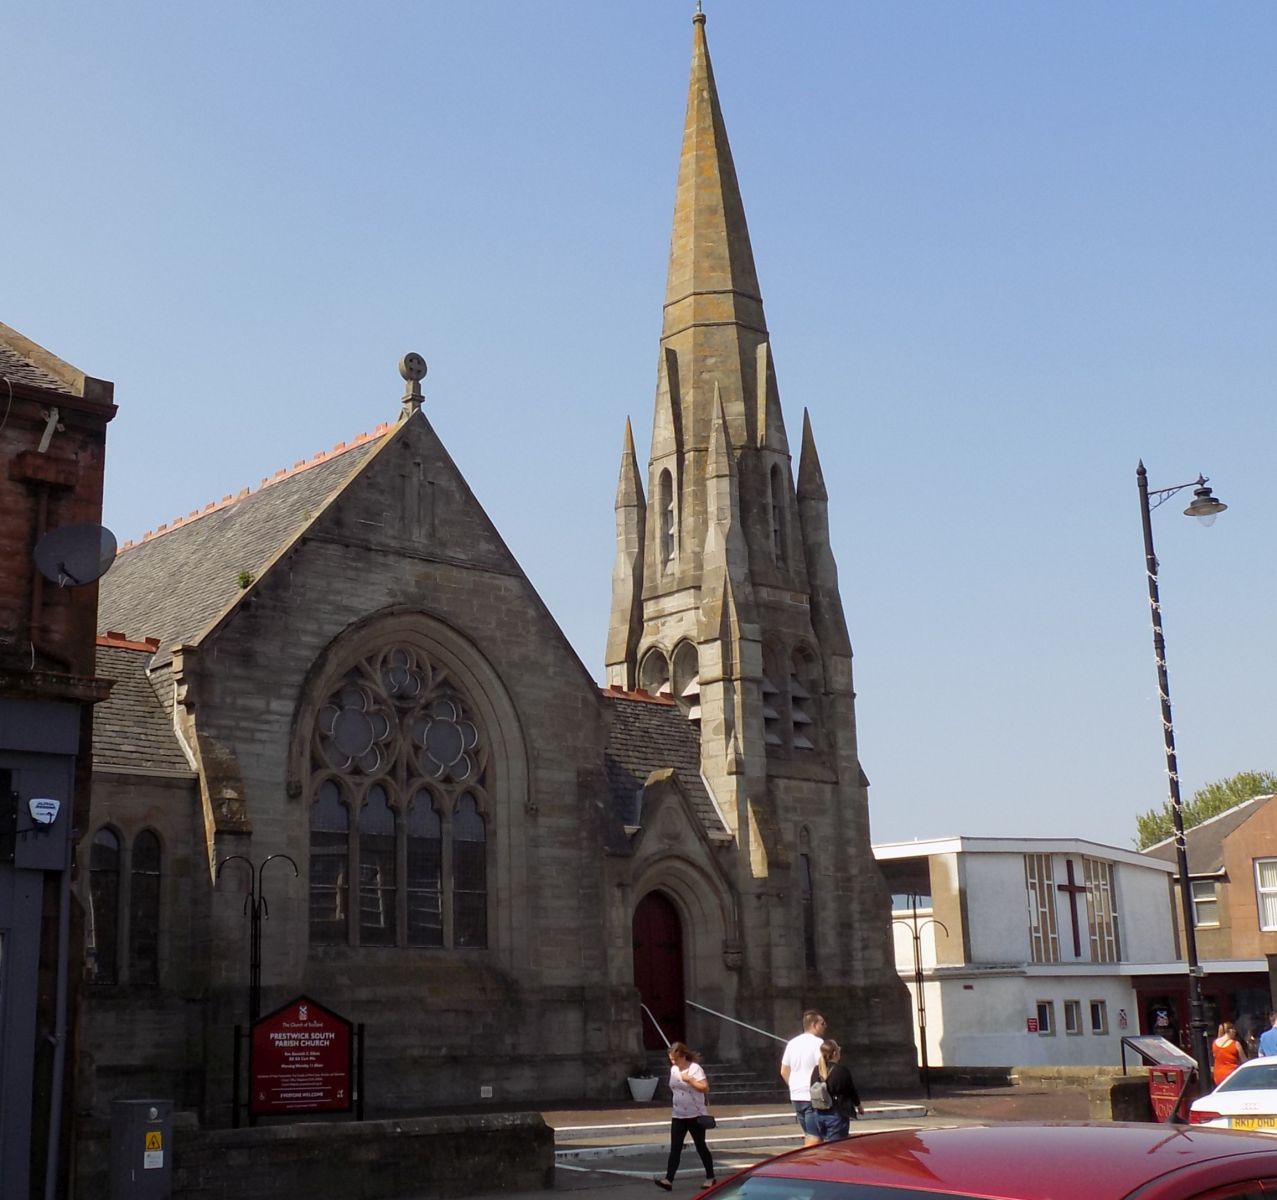 South Parish Church in Prestwick